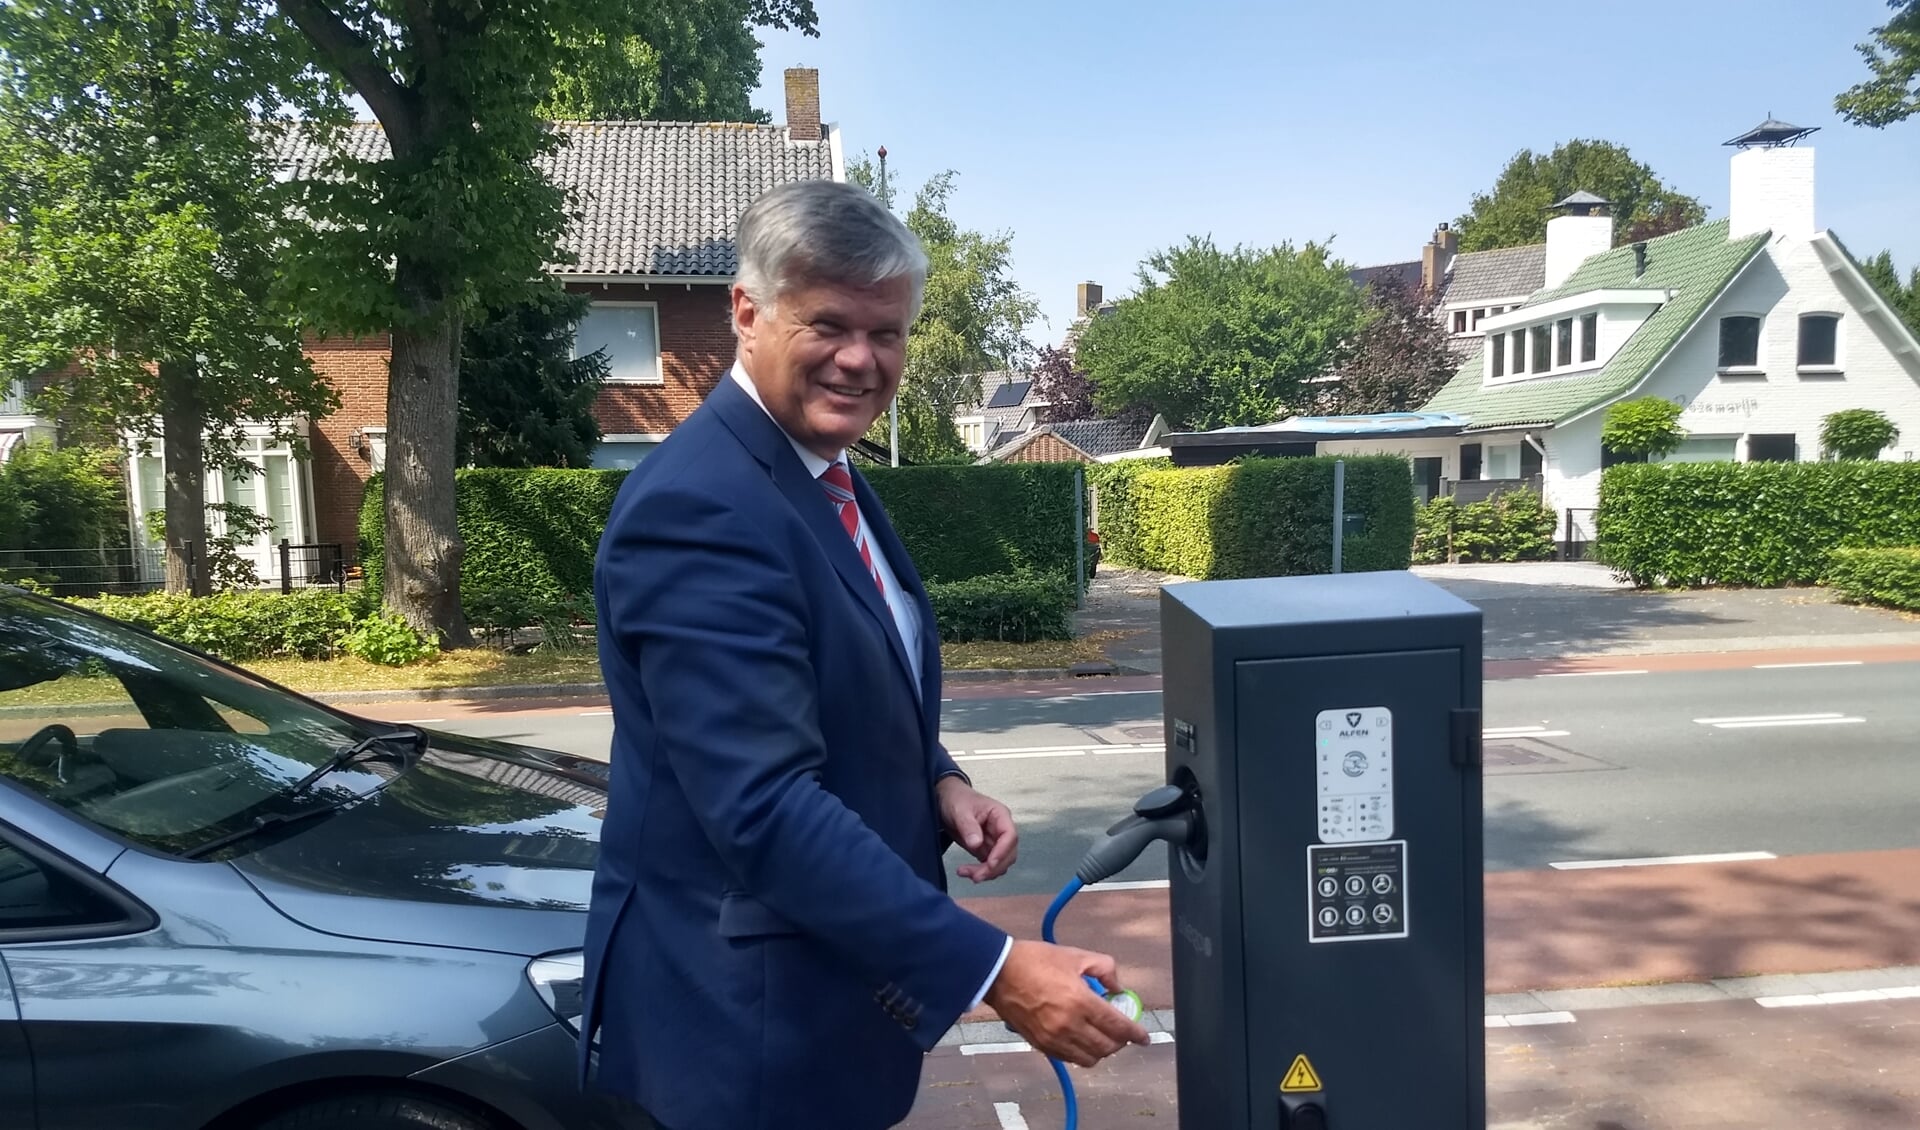 Met het aankoppelen van de auto aan de nieuwe laadpaal, nam wethouder Kees van der Zwet deze officieel in gebruik.